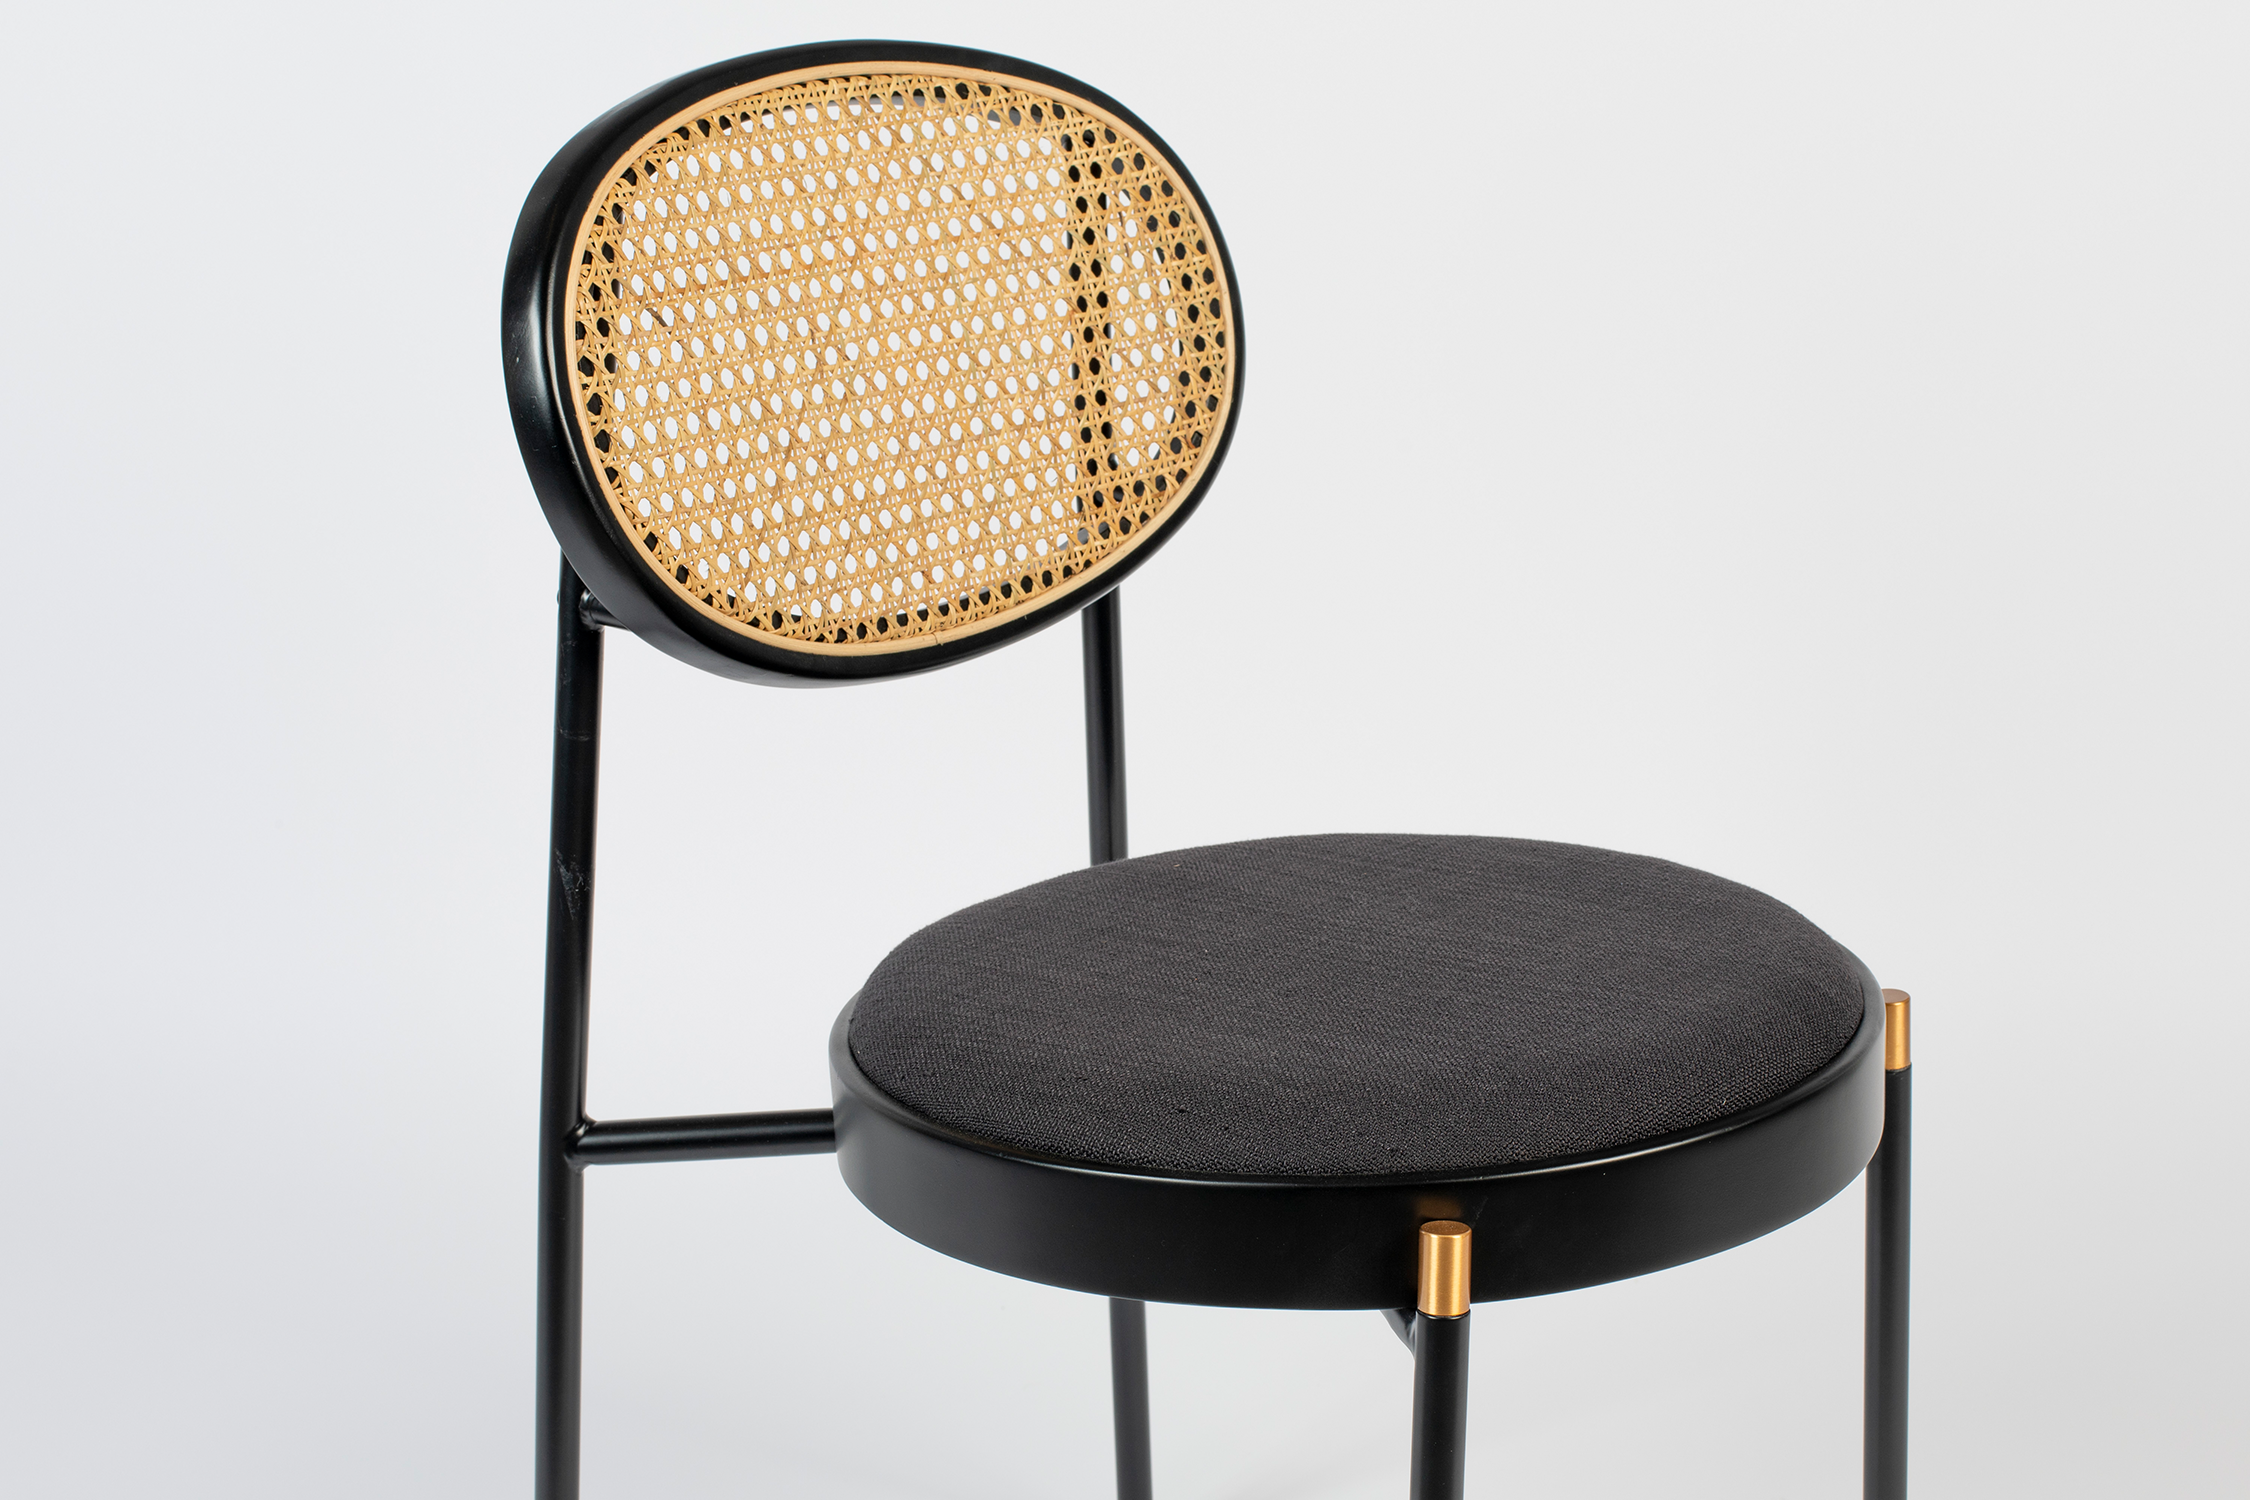 DON'T STOP THE WEBBING Stuhl in Schwarz/Natur präsentiert im Onlineshop von KAQTU Design AG. Stuhl ist von Bold Monkey